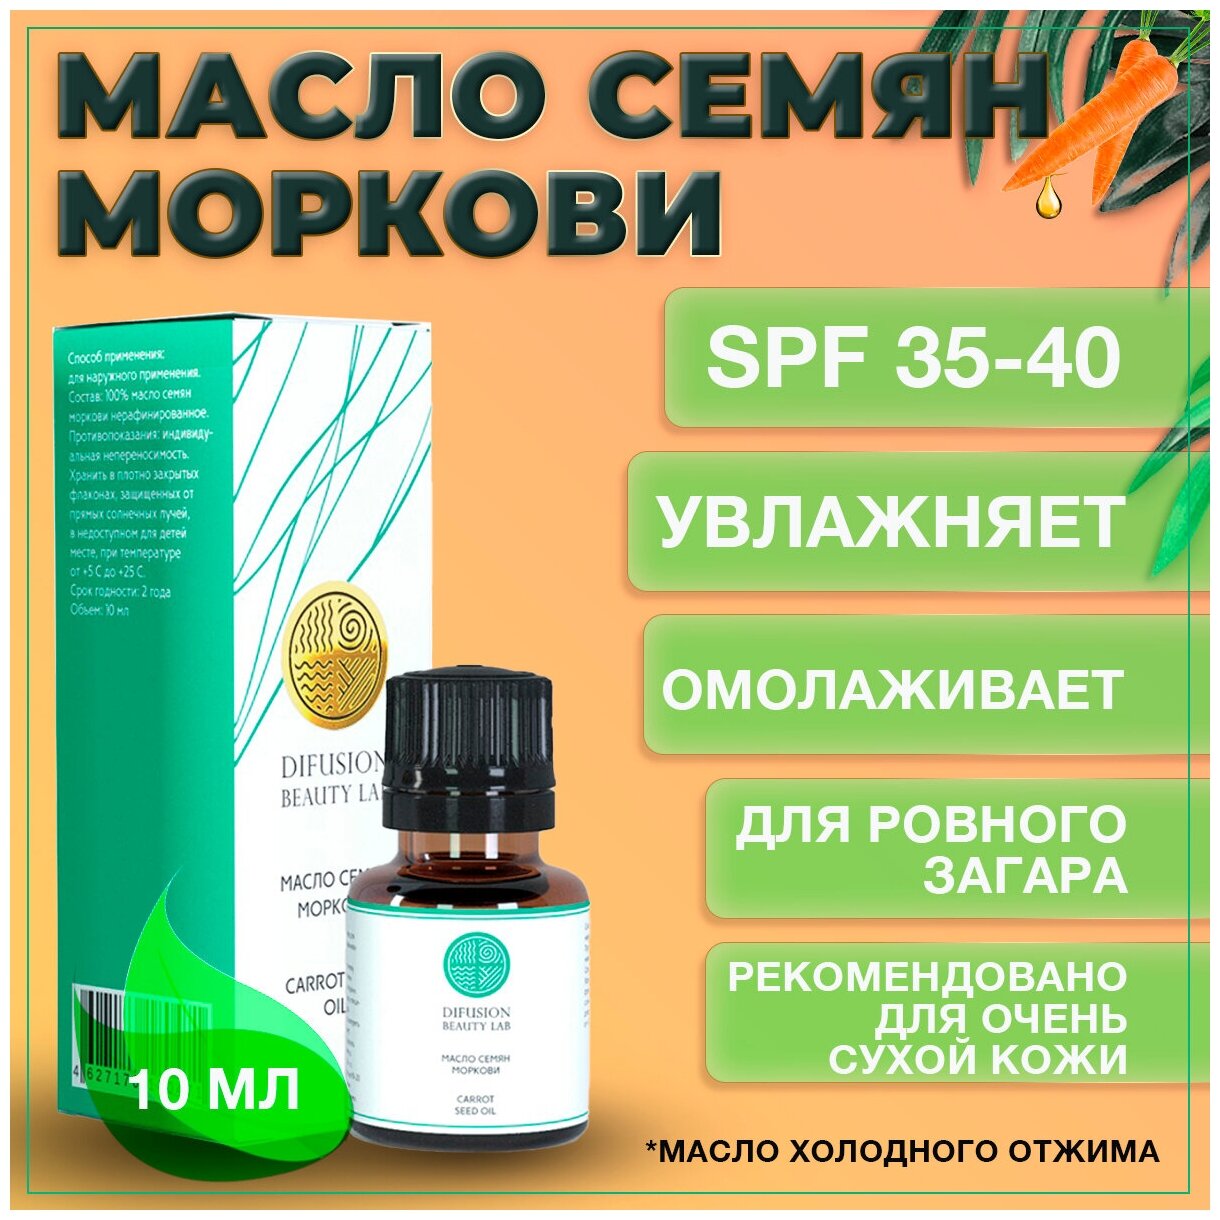 Масло семян Моркови Difusion Beauty Lab (антиоксидантные свойства, антивозрастные), spf 35-40, 10 мл